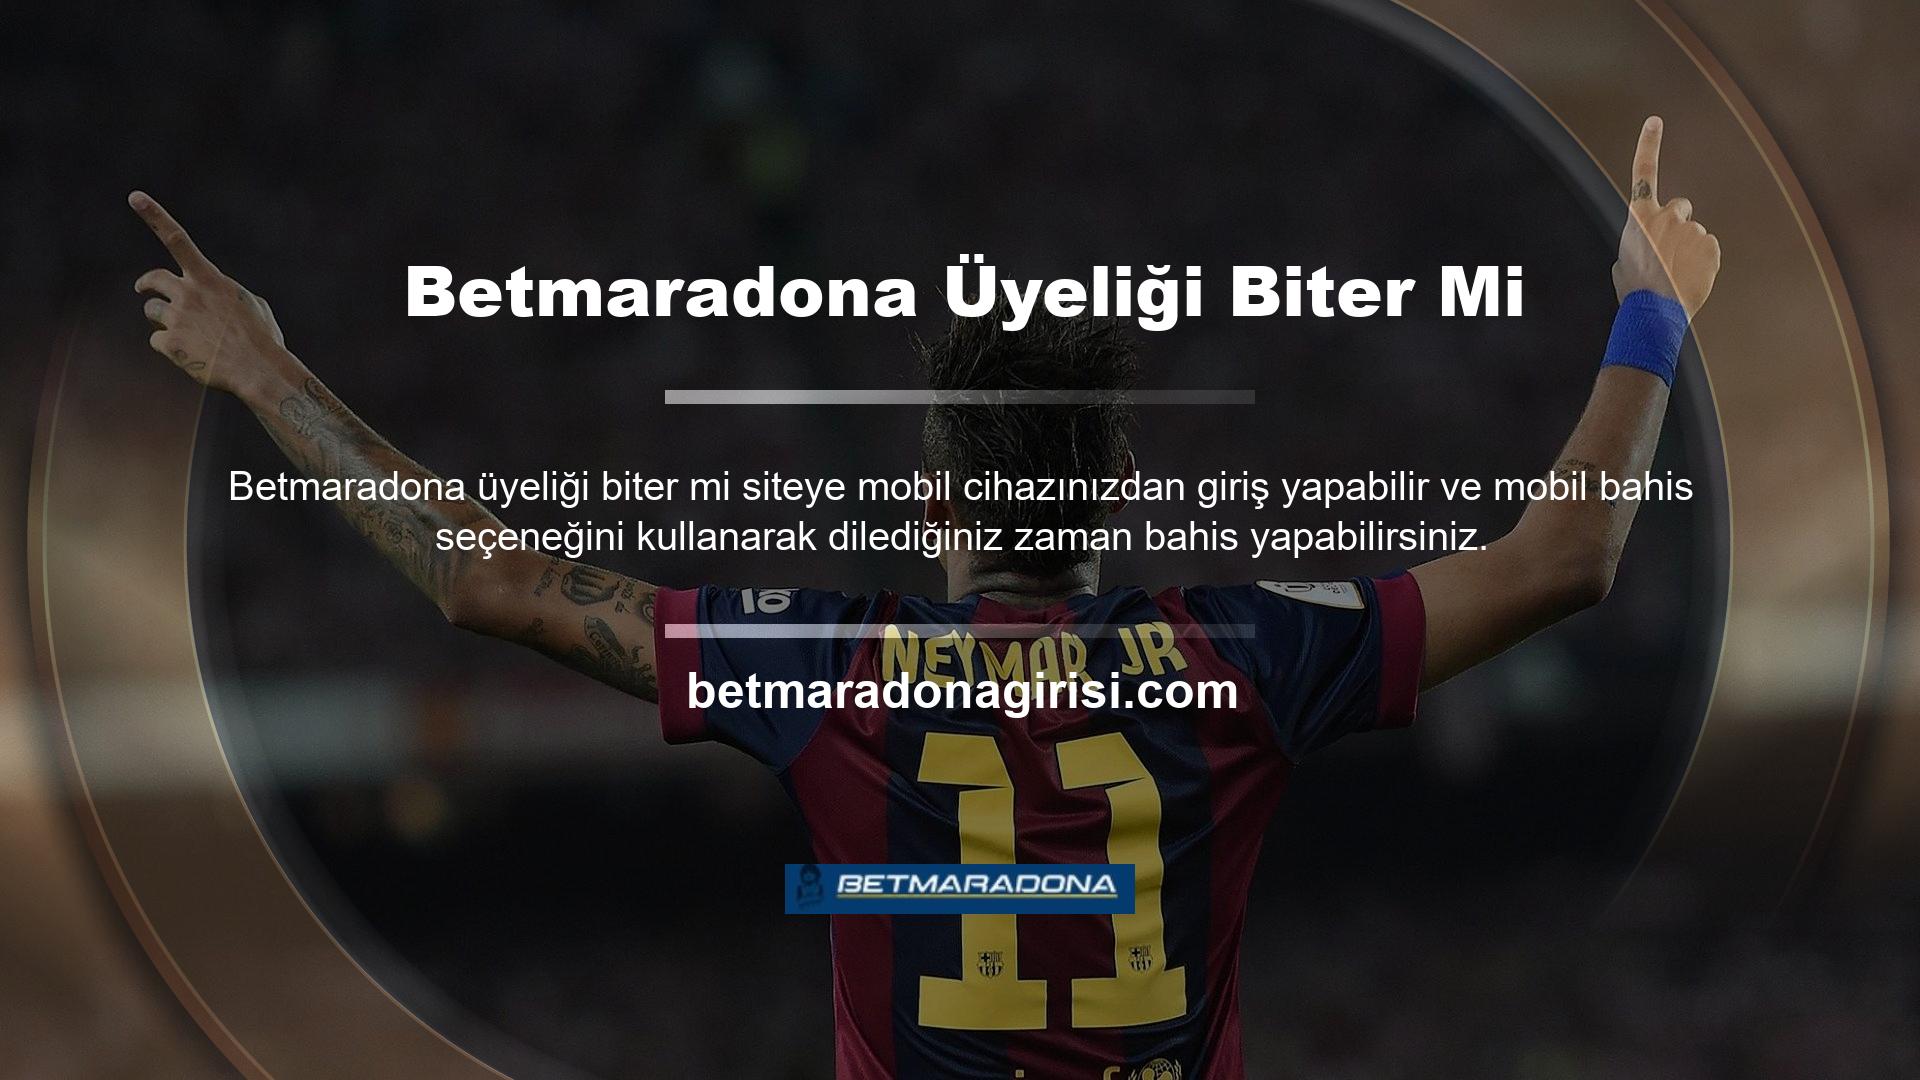 Aynı zamanda telefonunuzun ana sayfasında Betmaradona Matchwatch butonunu göreceksiniz